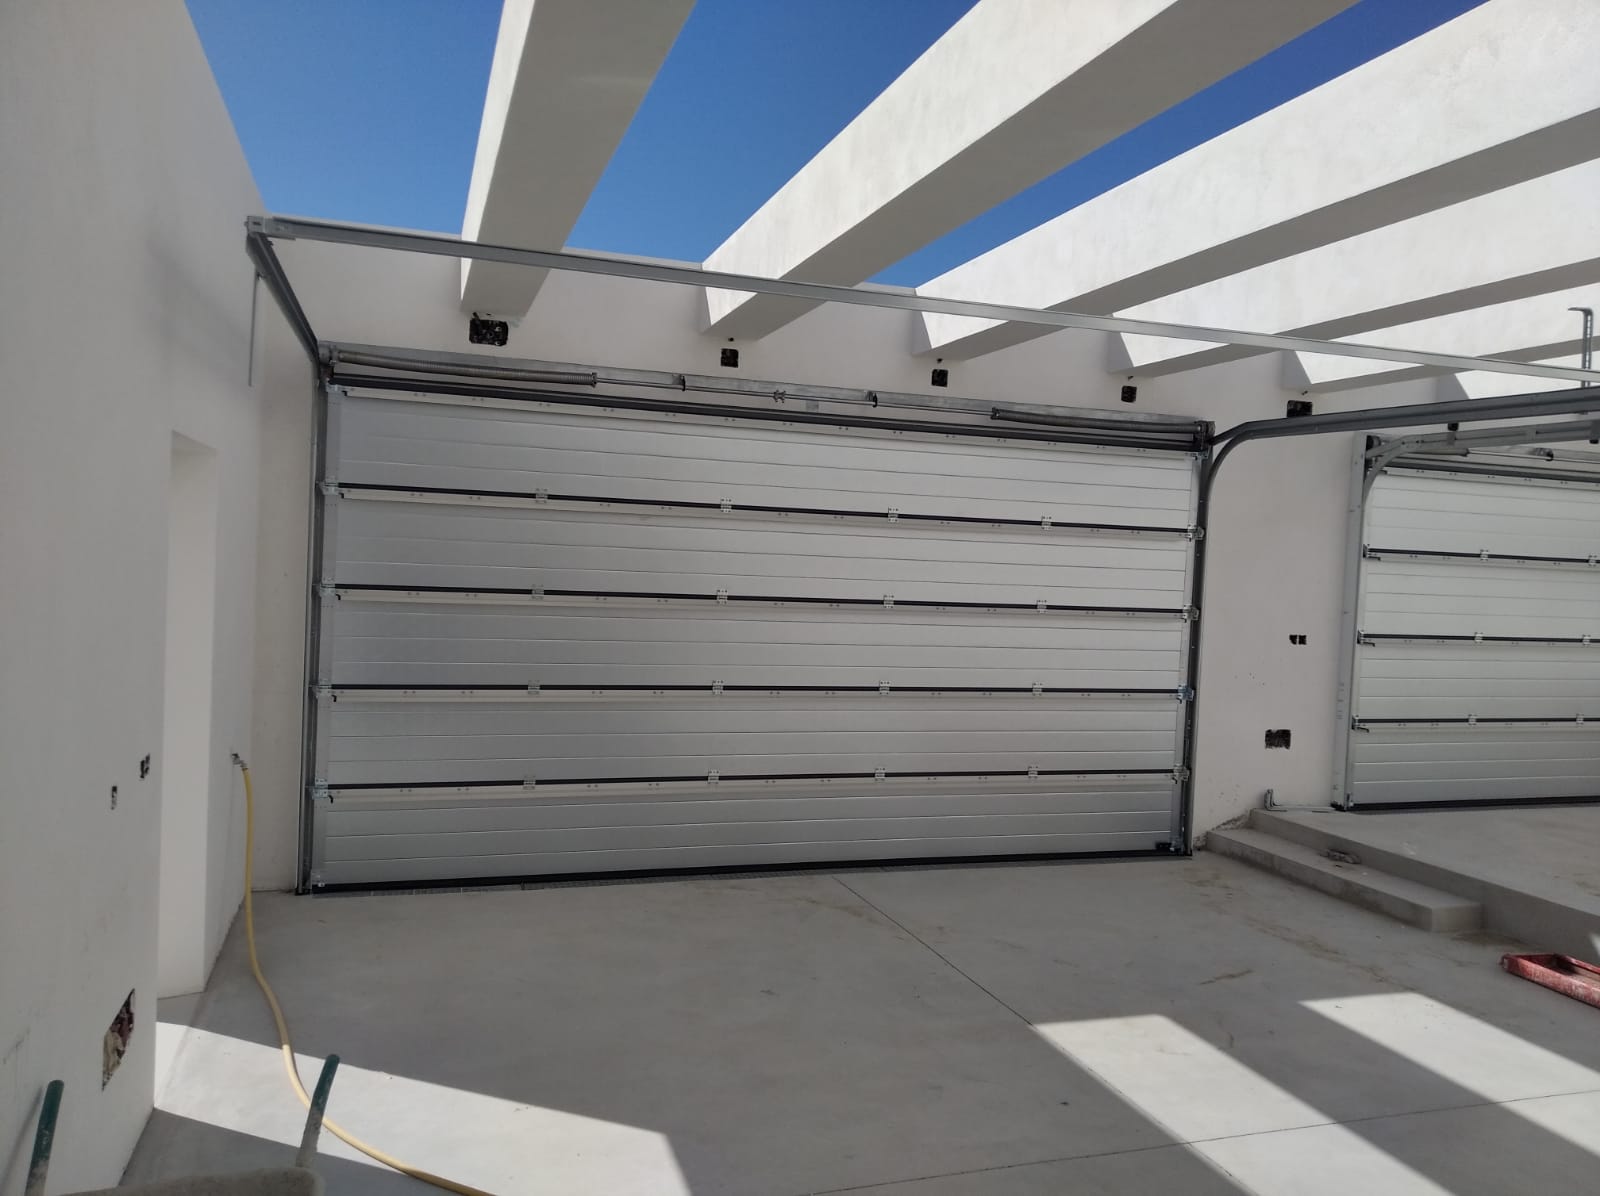 Son seguras las puertas de garaje motorizadas? - Automatismos Cypex S.L.